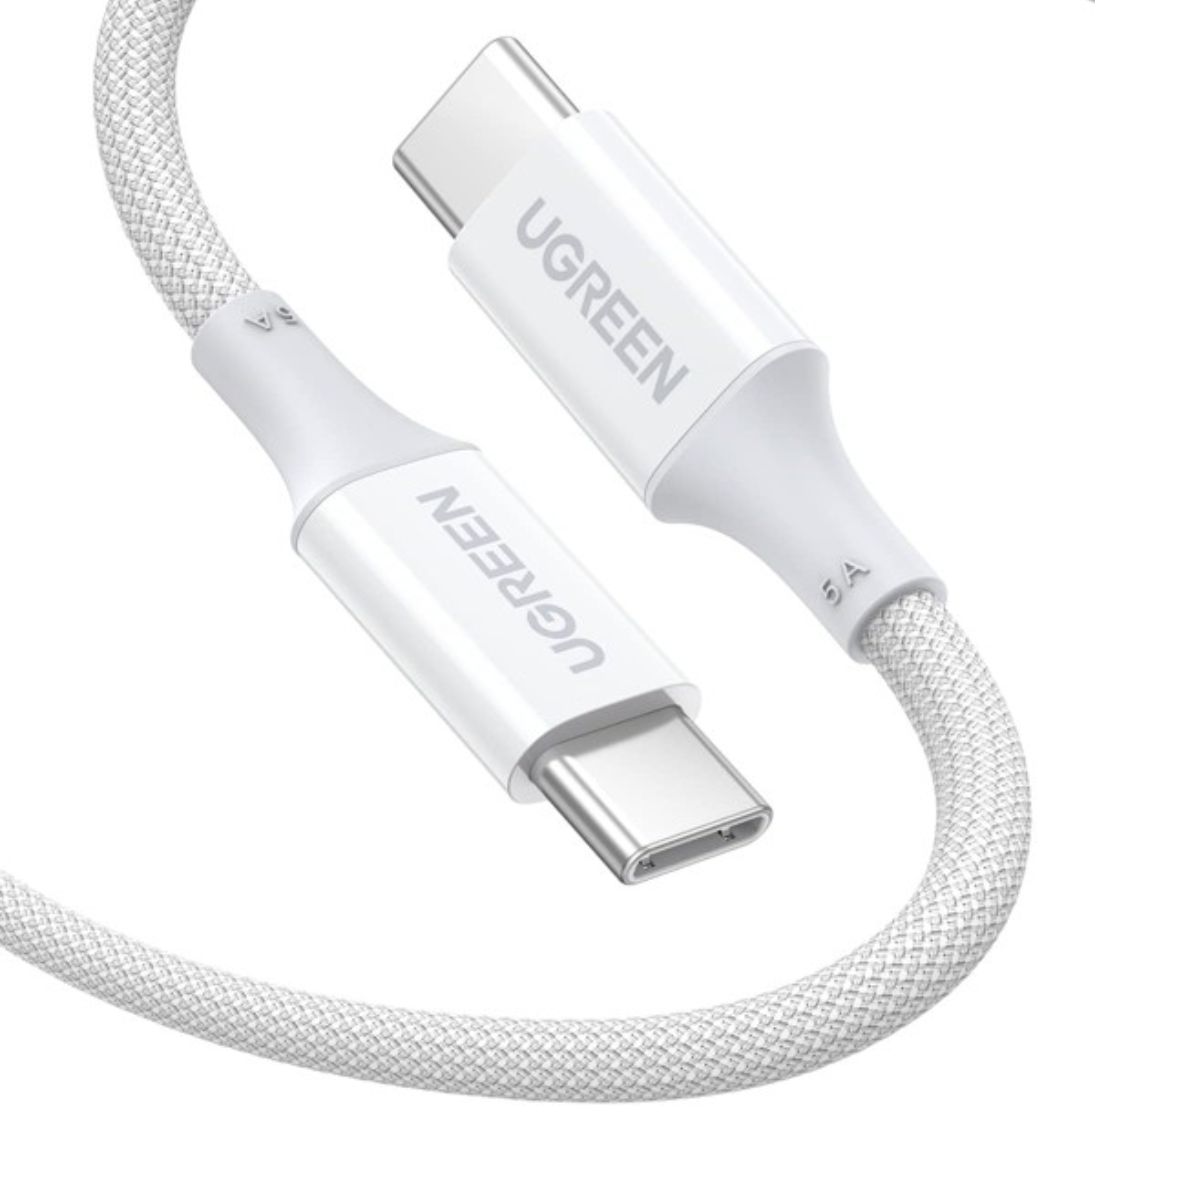 Cáp sạc nhanh silicone 1m USB type C Ugreen 15267 US557 màu trắng, sạc nhanh Quick Charge 3.0